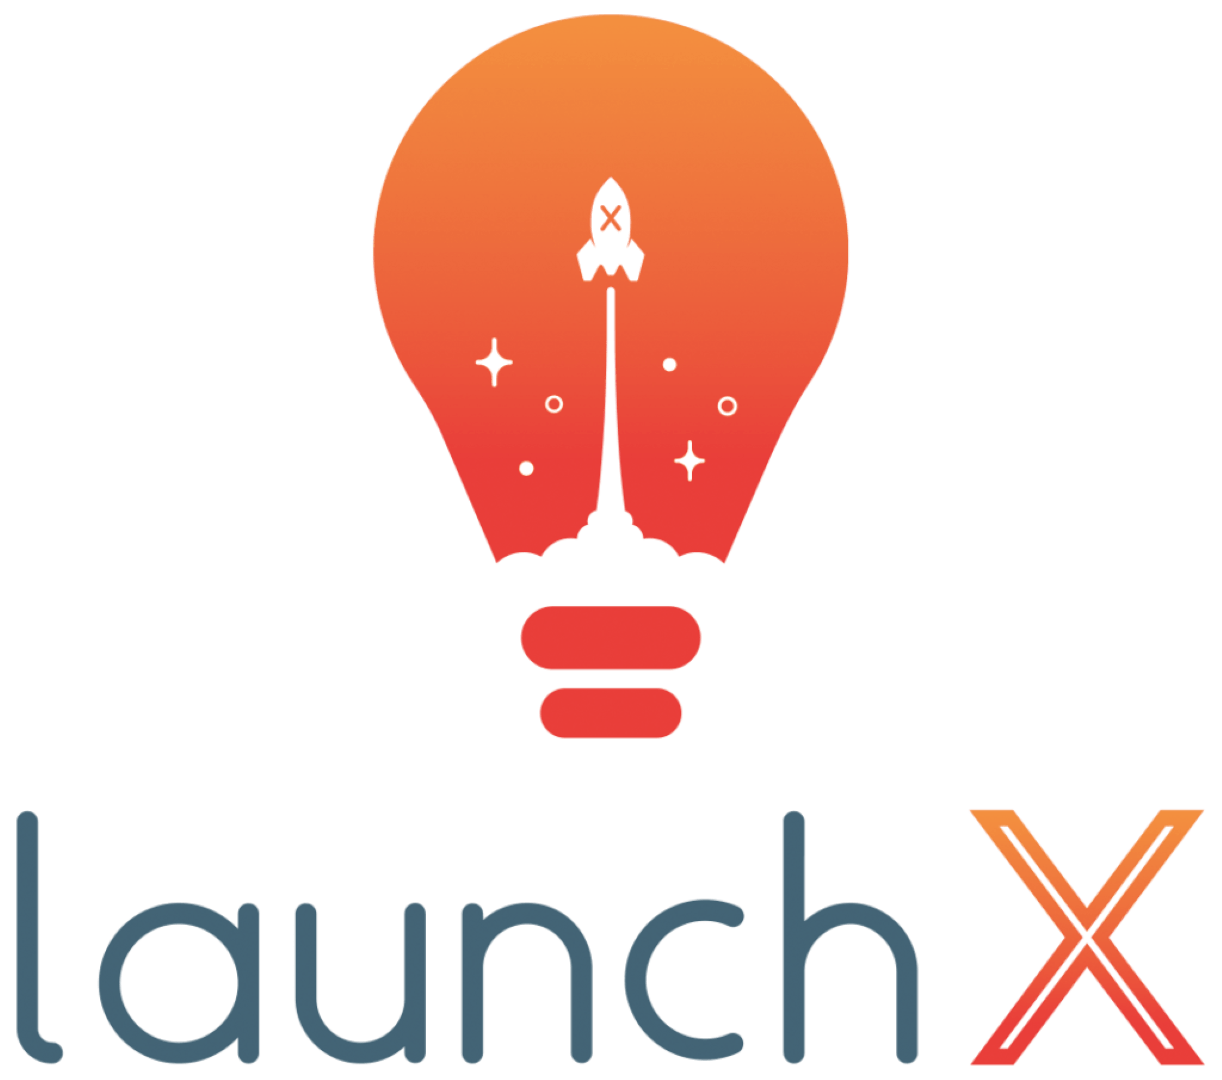 LaunchX Logo